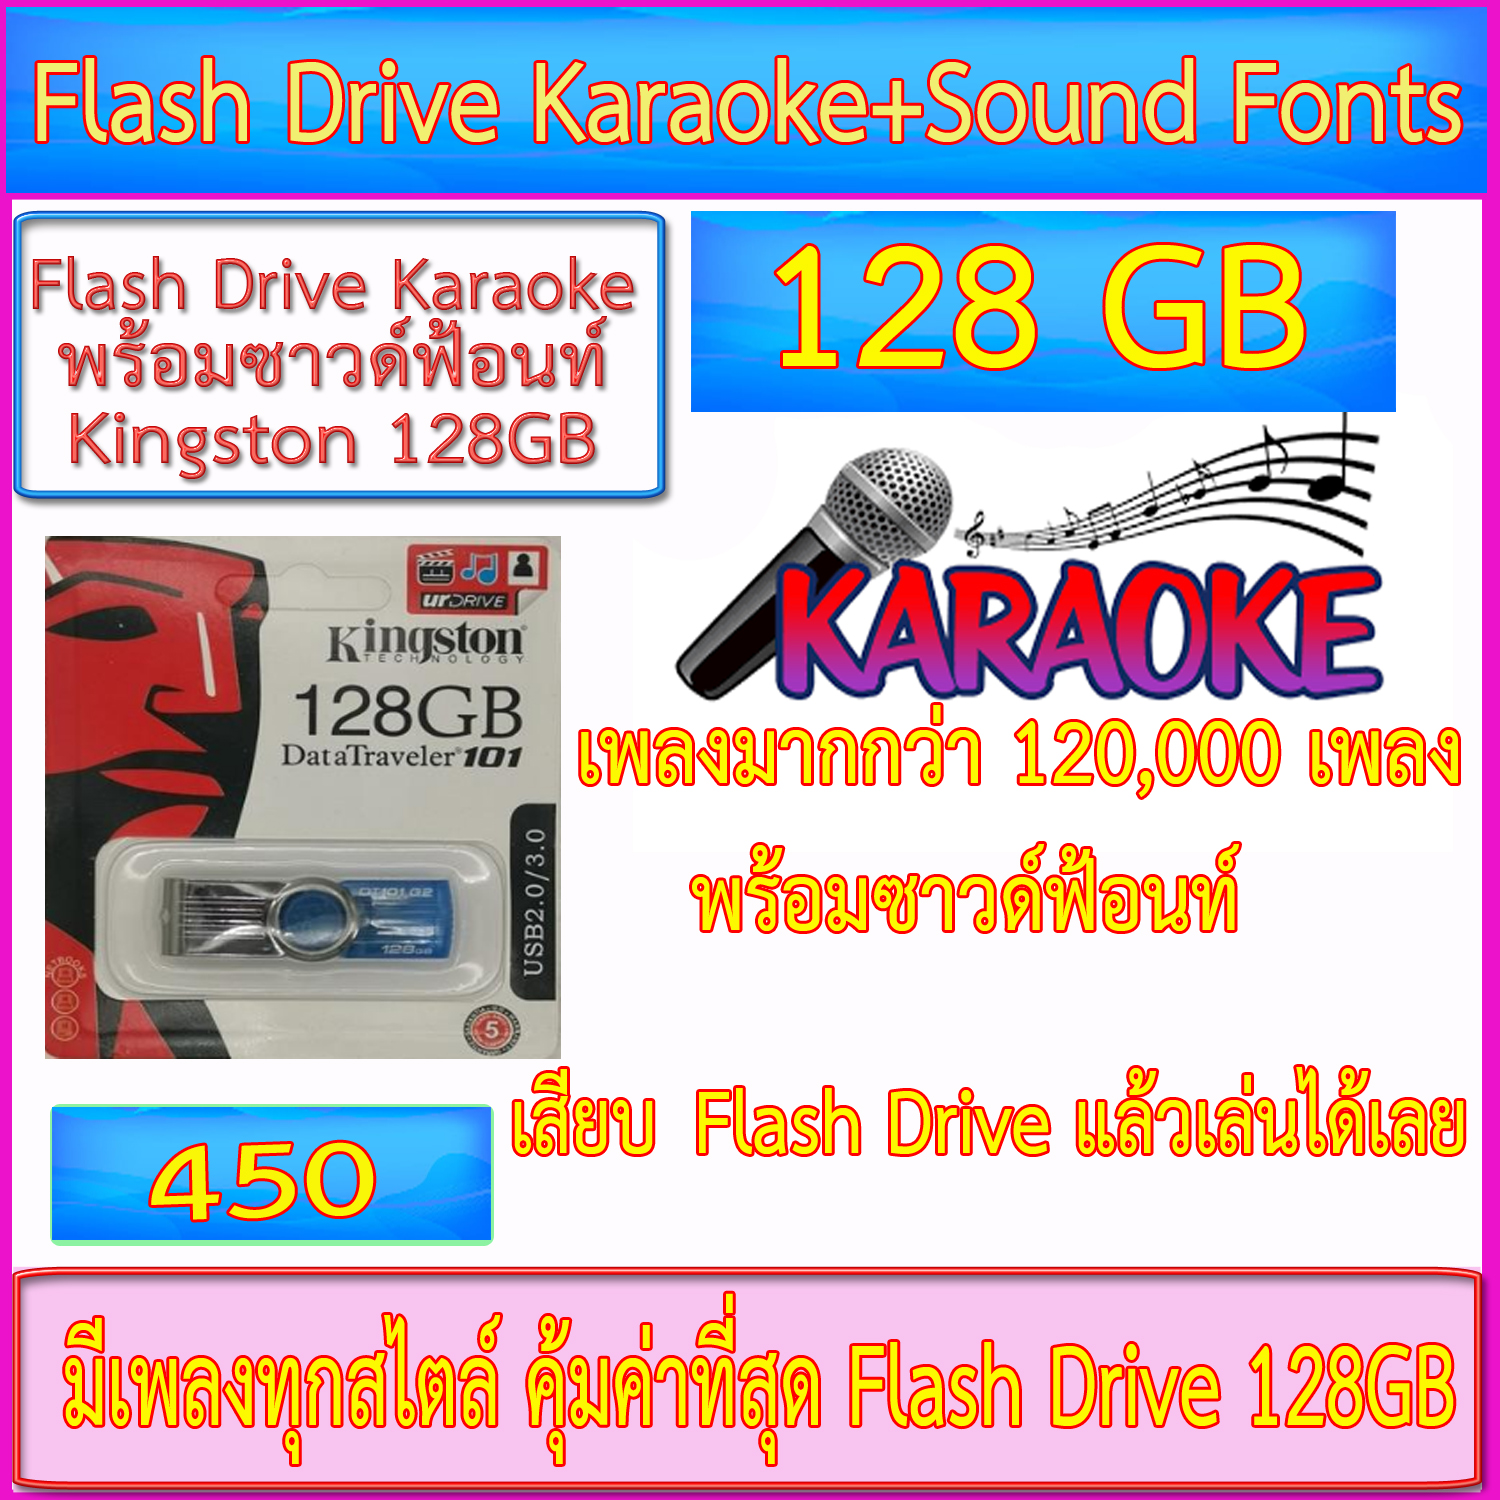 Flash Drive Karaoke 128GB (เพลงมากกว่า 120,000 เพลง+ซาวด์ฟ้อนท์-- เล่นได้เลยไม่ต้องลงโปรแกรม---